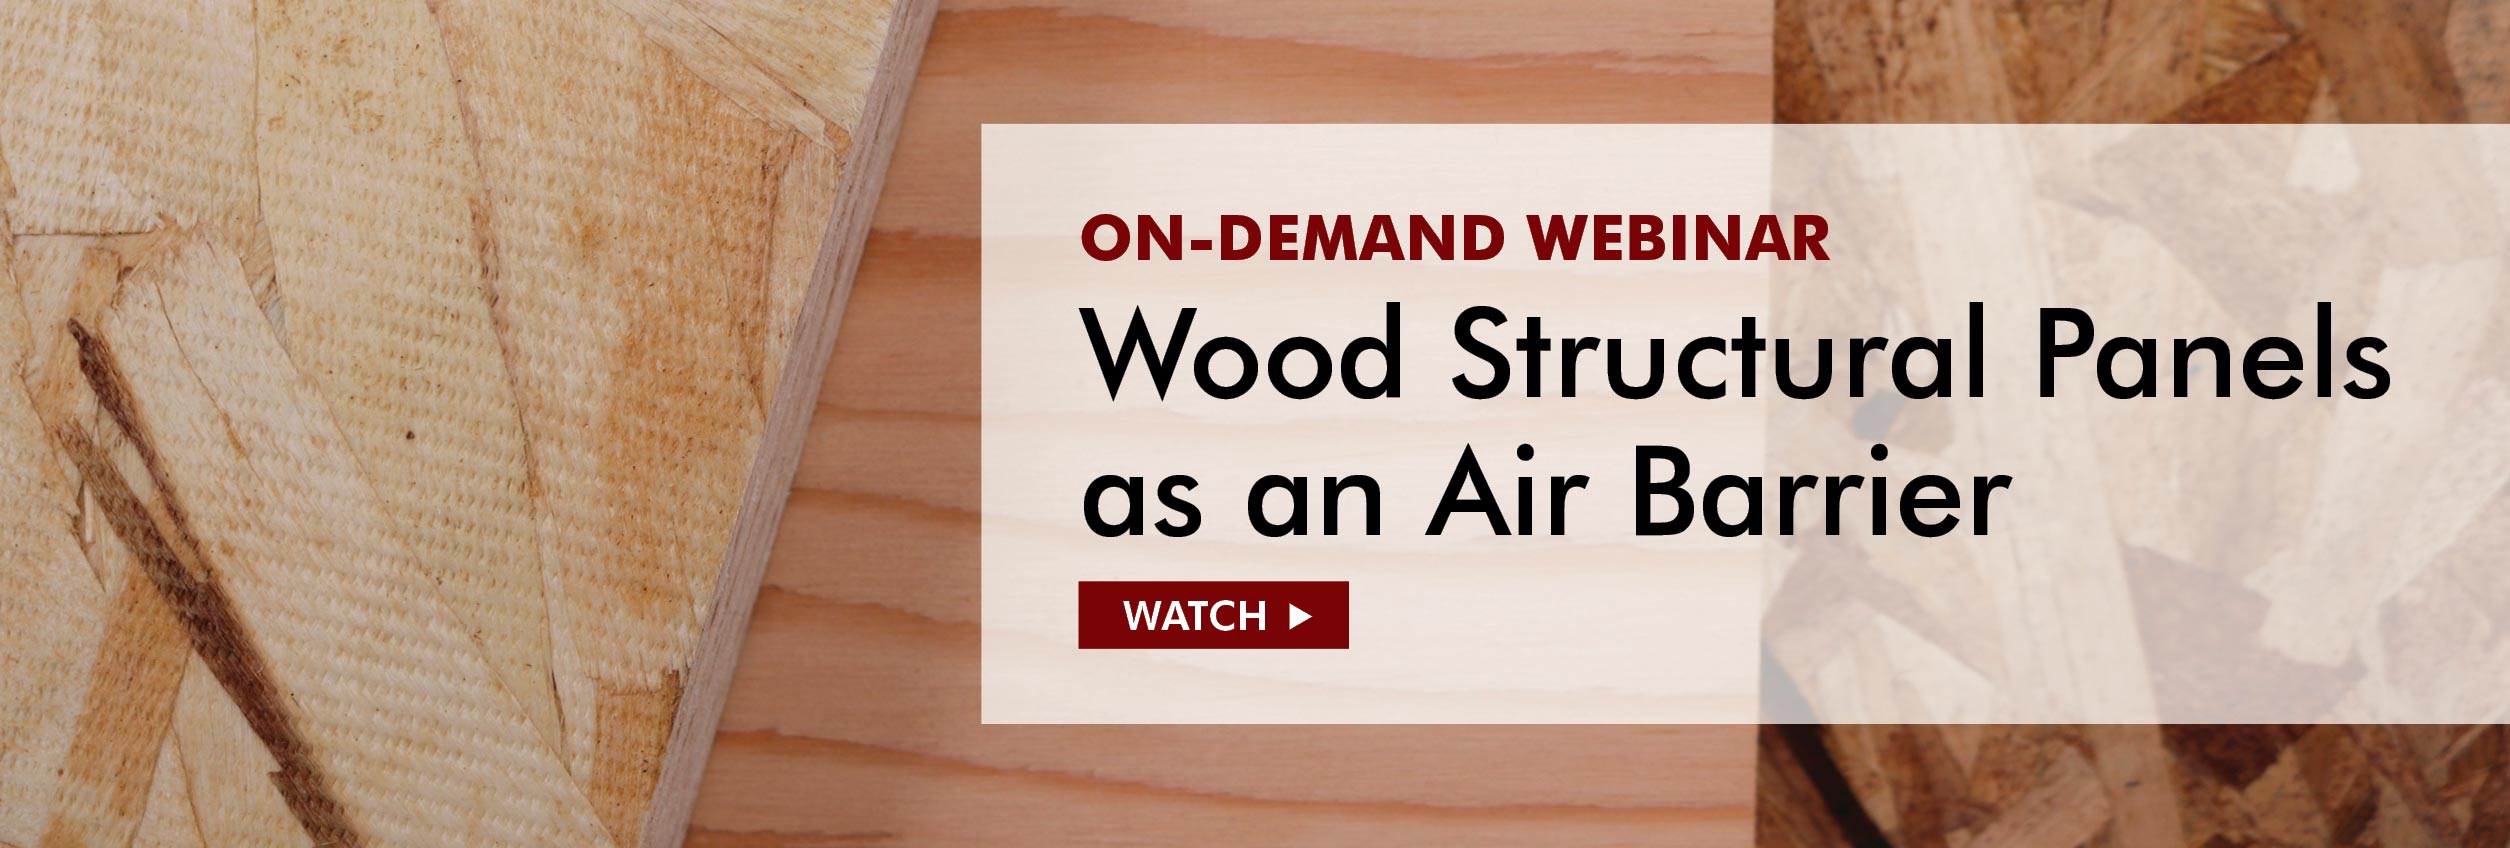 Wood Structural Panels As An Air Barrier Webinar